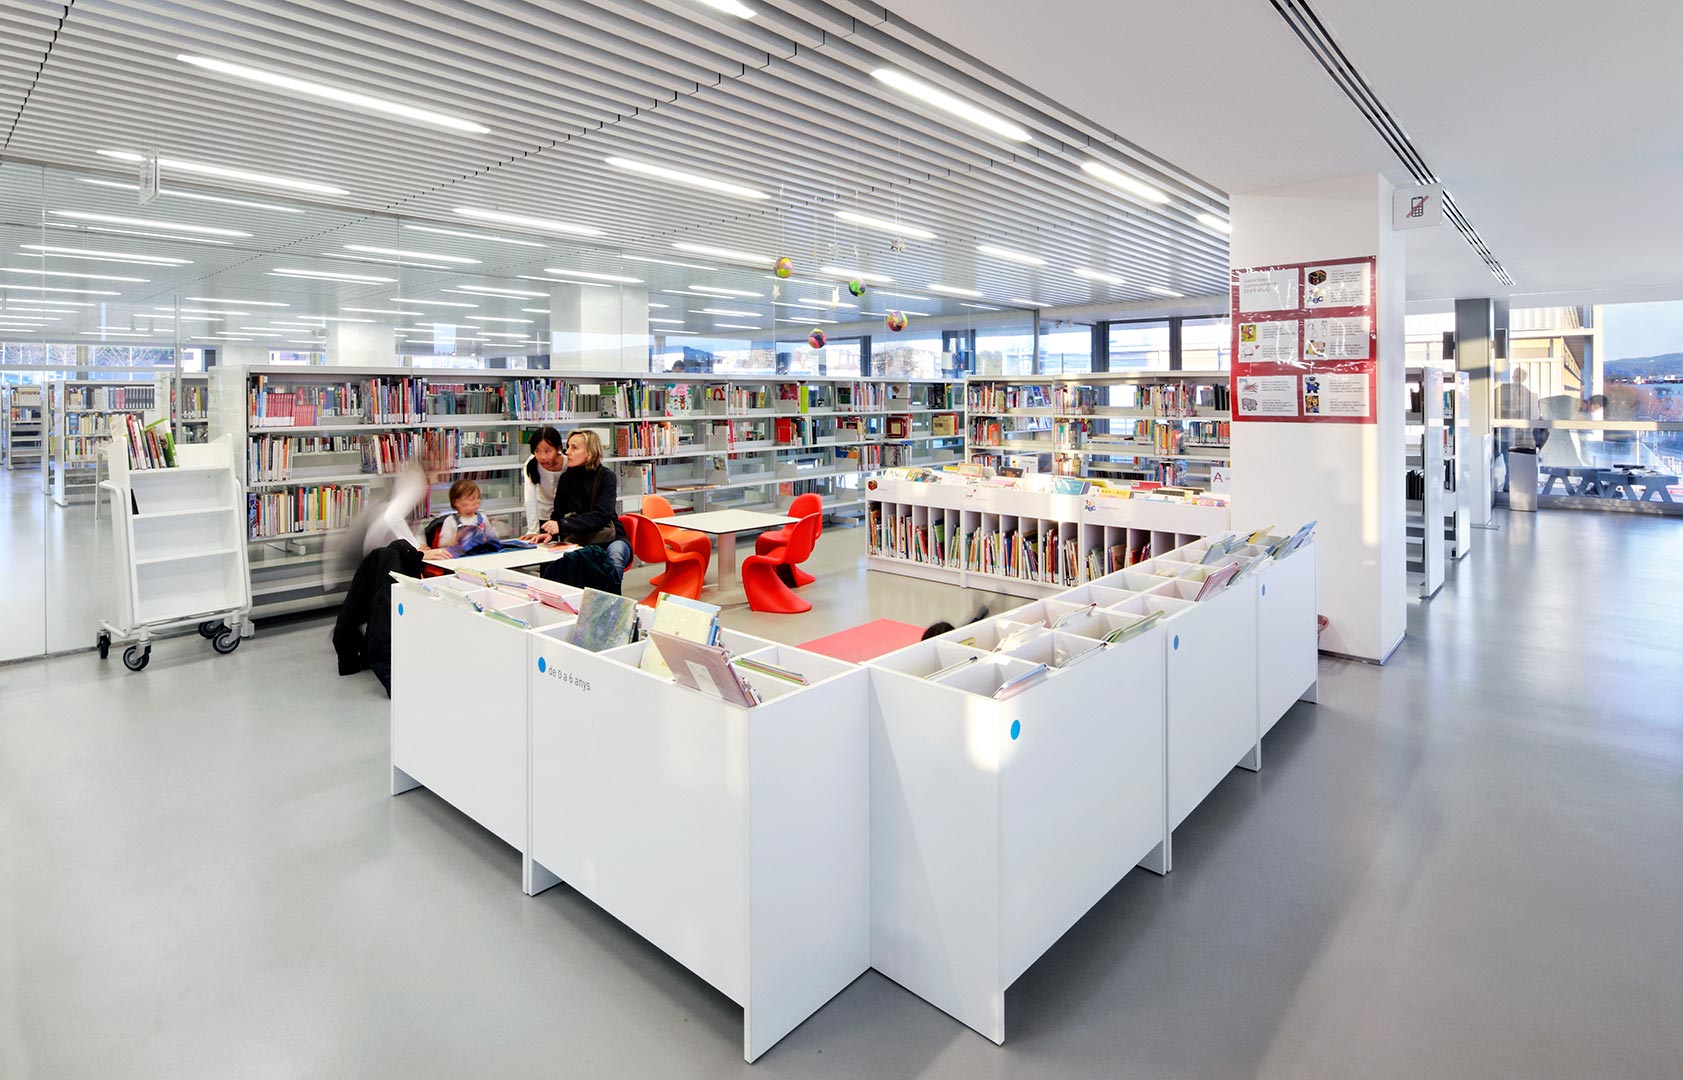 Marta Pessarrodona Library